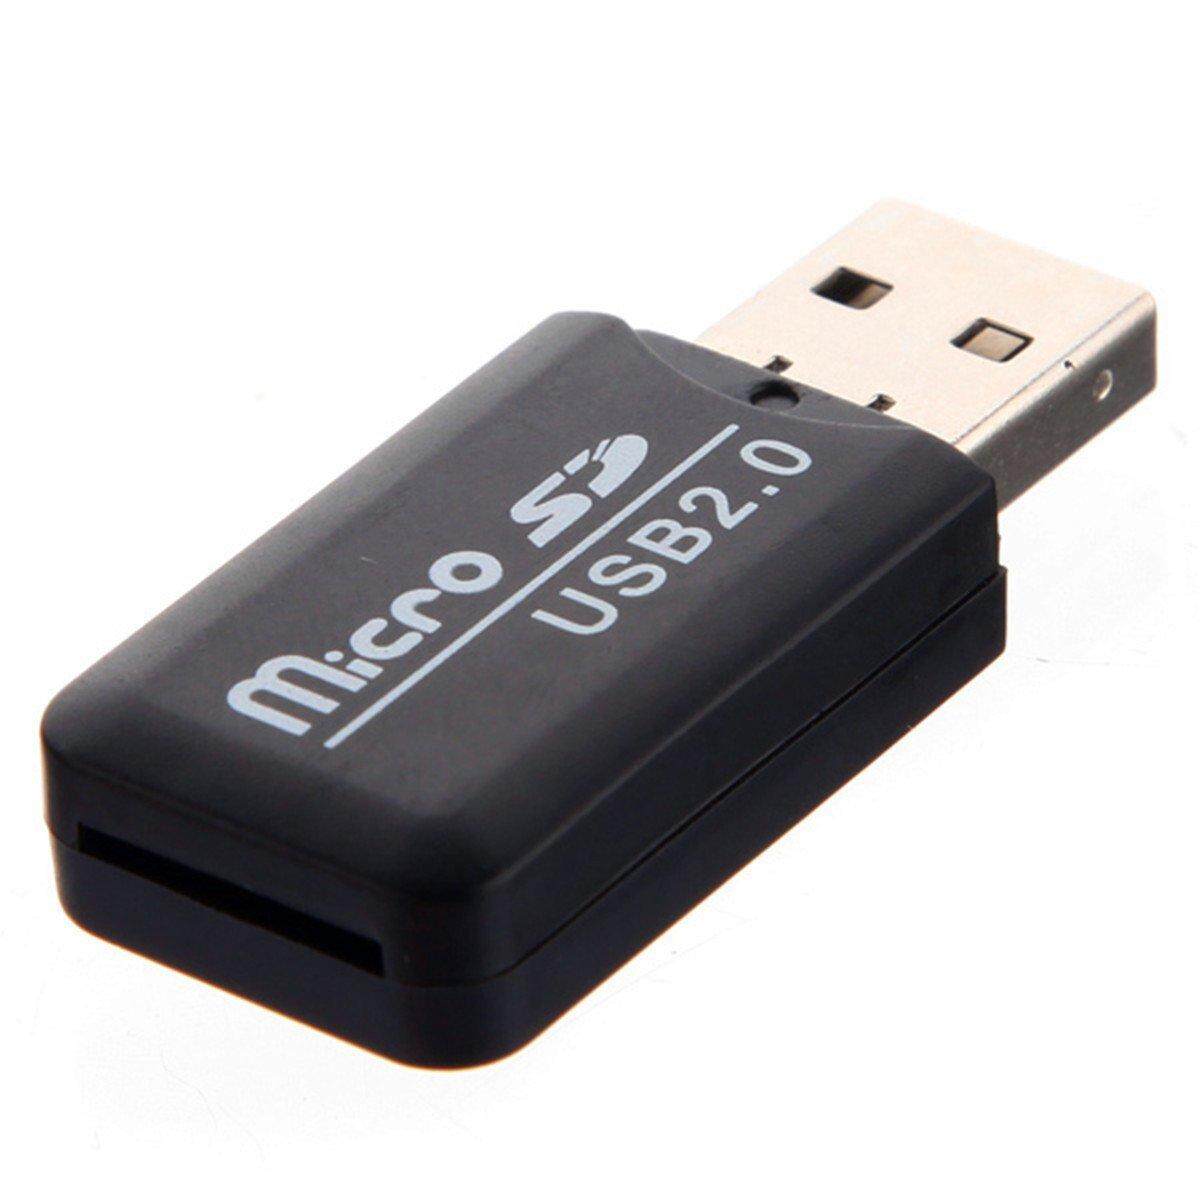 Сд флешка купить. Флешка MICROSD USB 2.0. Картридер USB 2.0 для MICROSD. Card Reader USB SD Card MICROSD. Картридер USB 2.0 Hup.